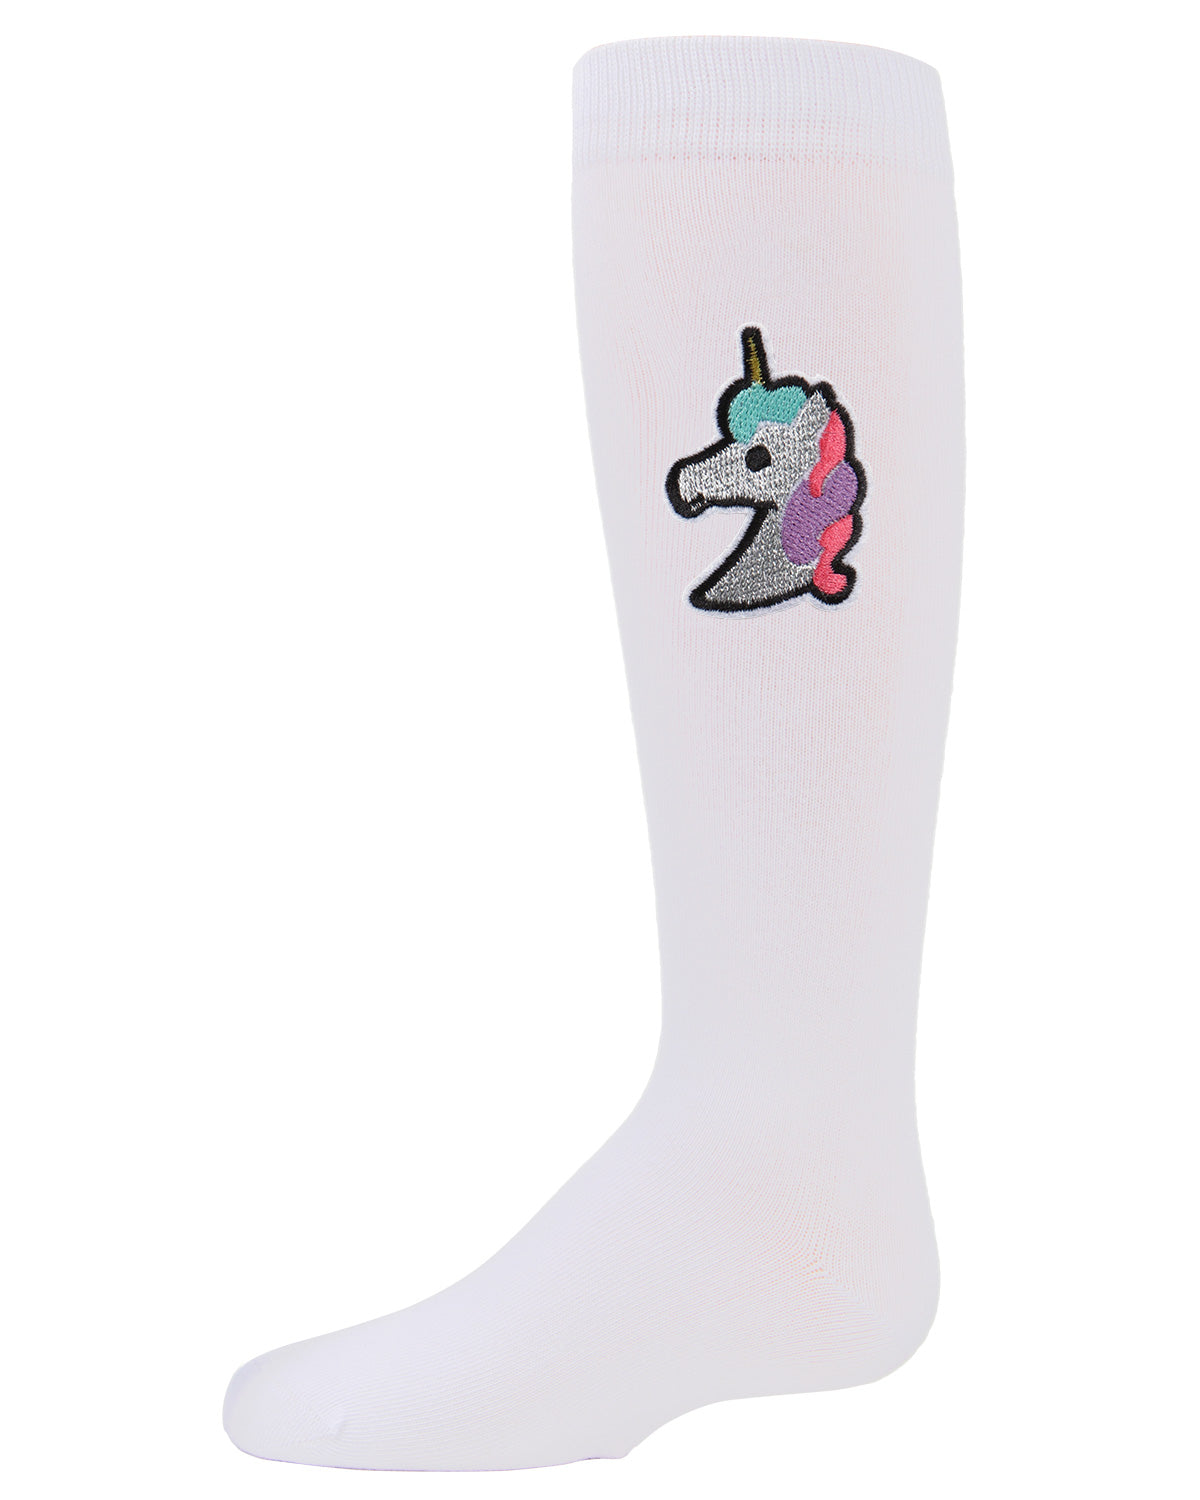 Girls' Glitter Unicorn Knee-High Socks